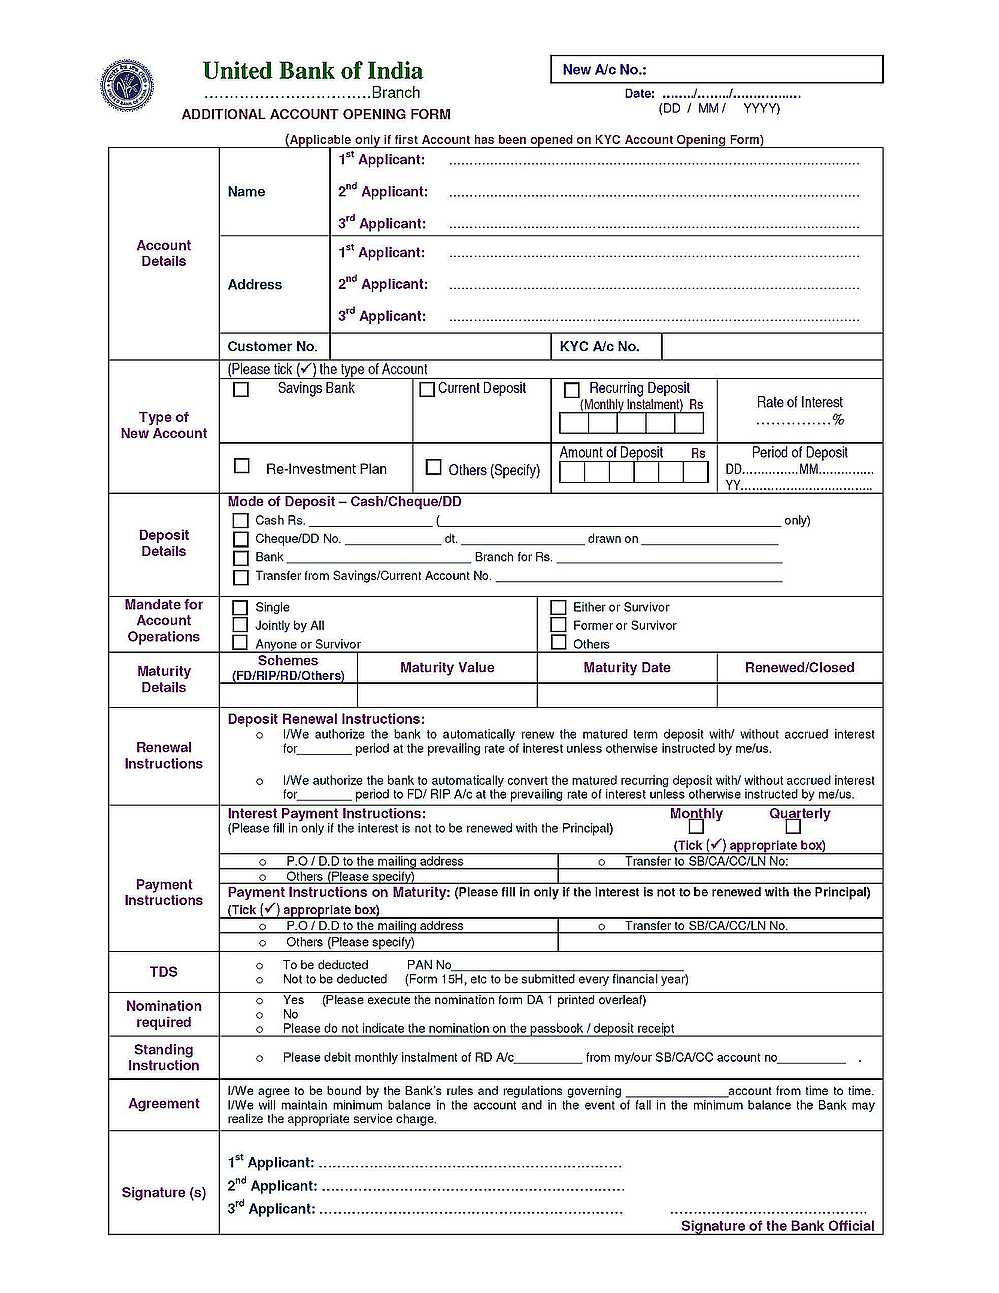 United Bank Of India KYC Form Pdf 2022 2023 EduVark